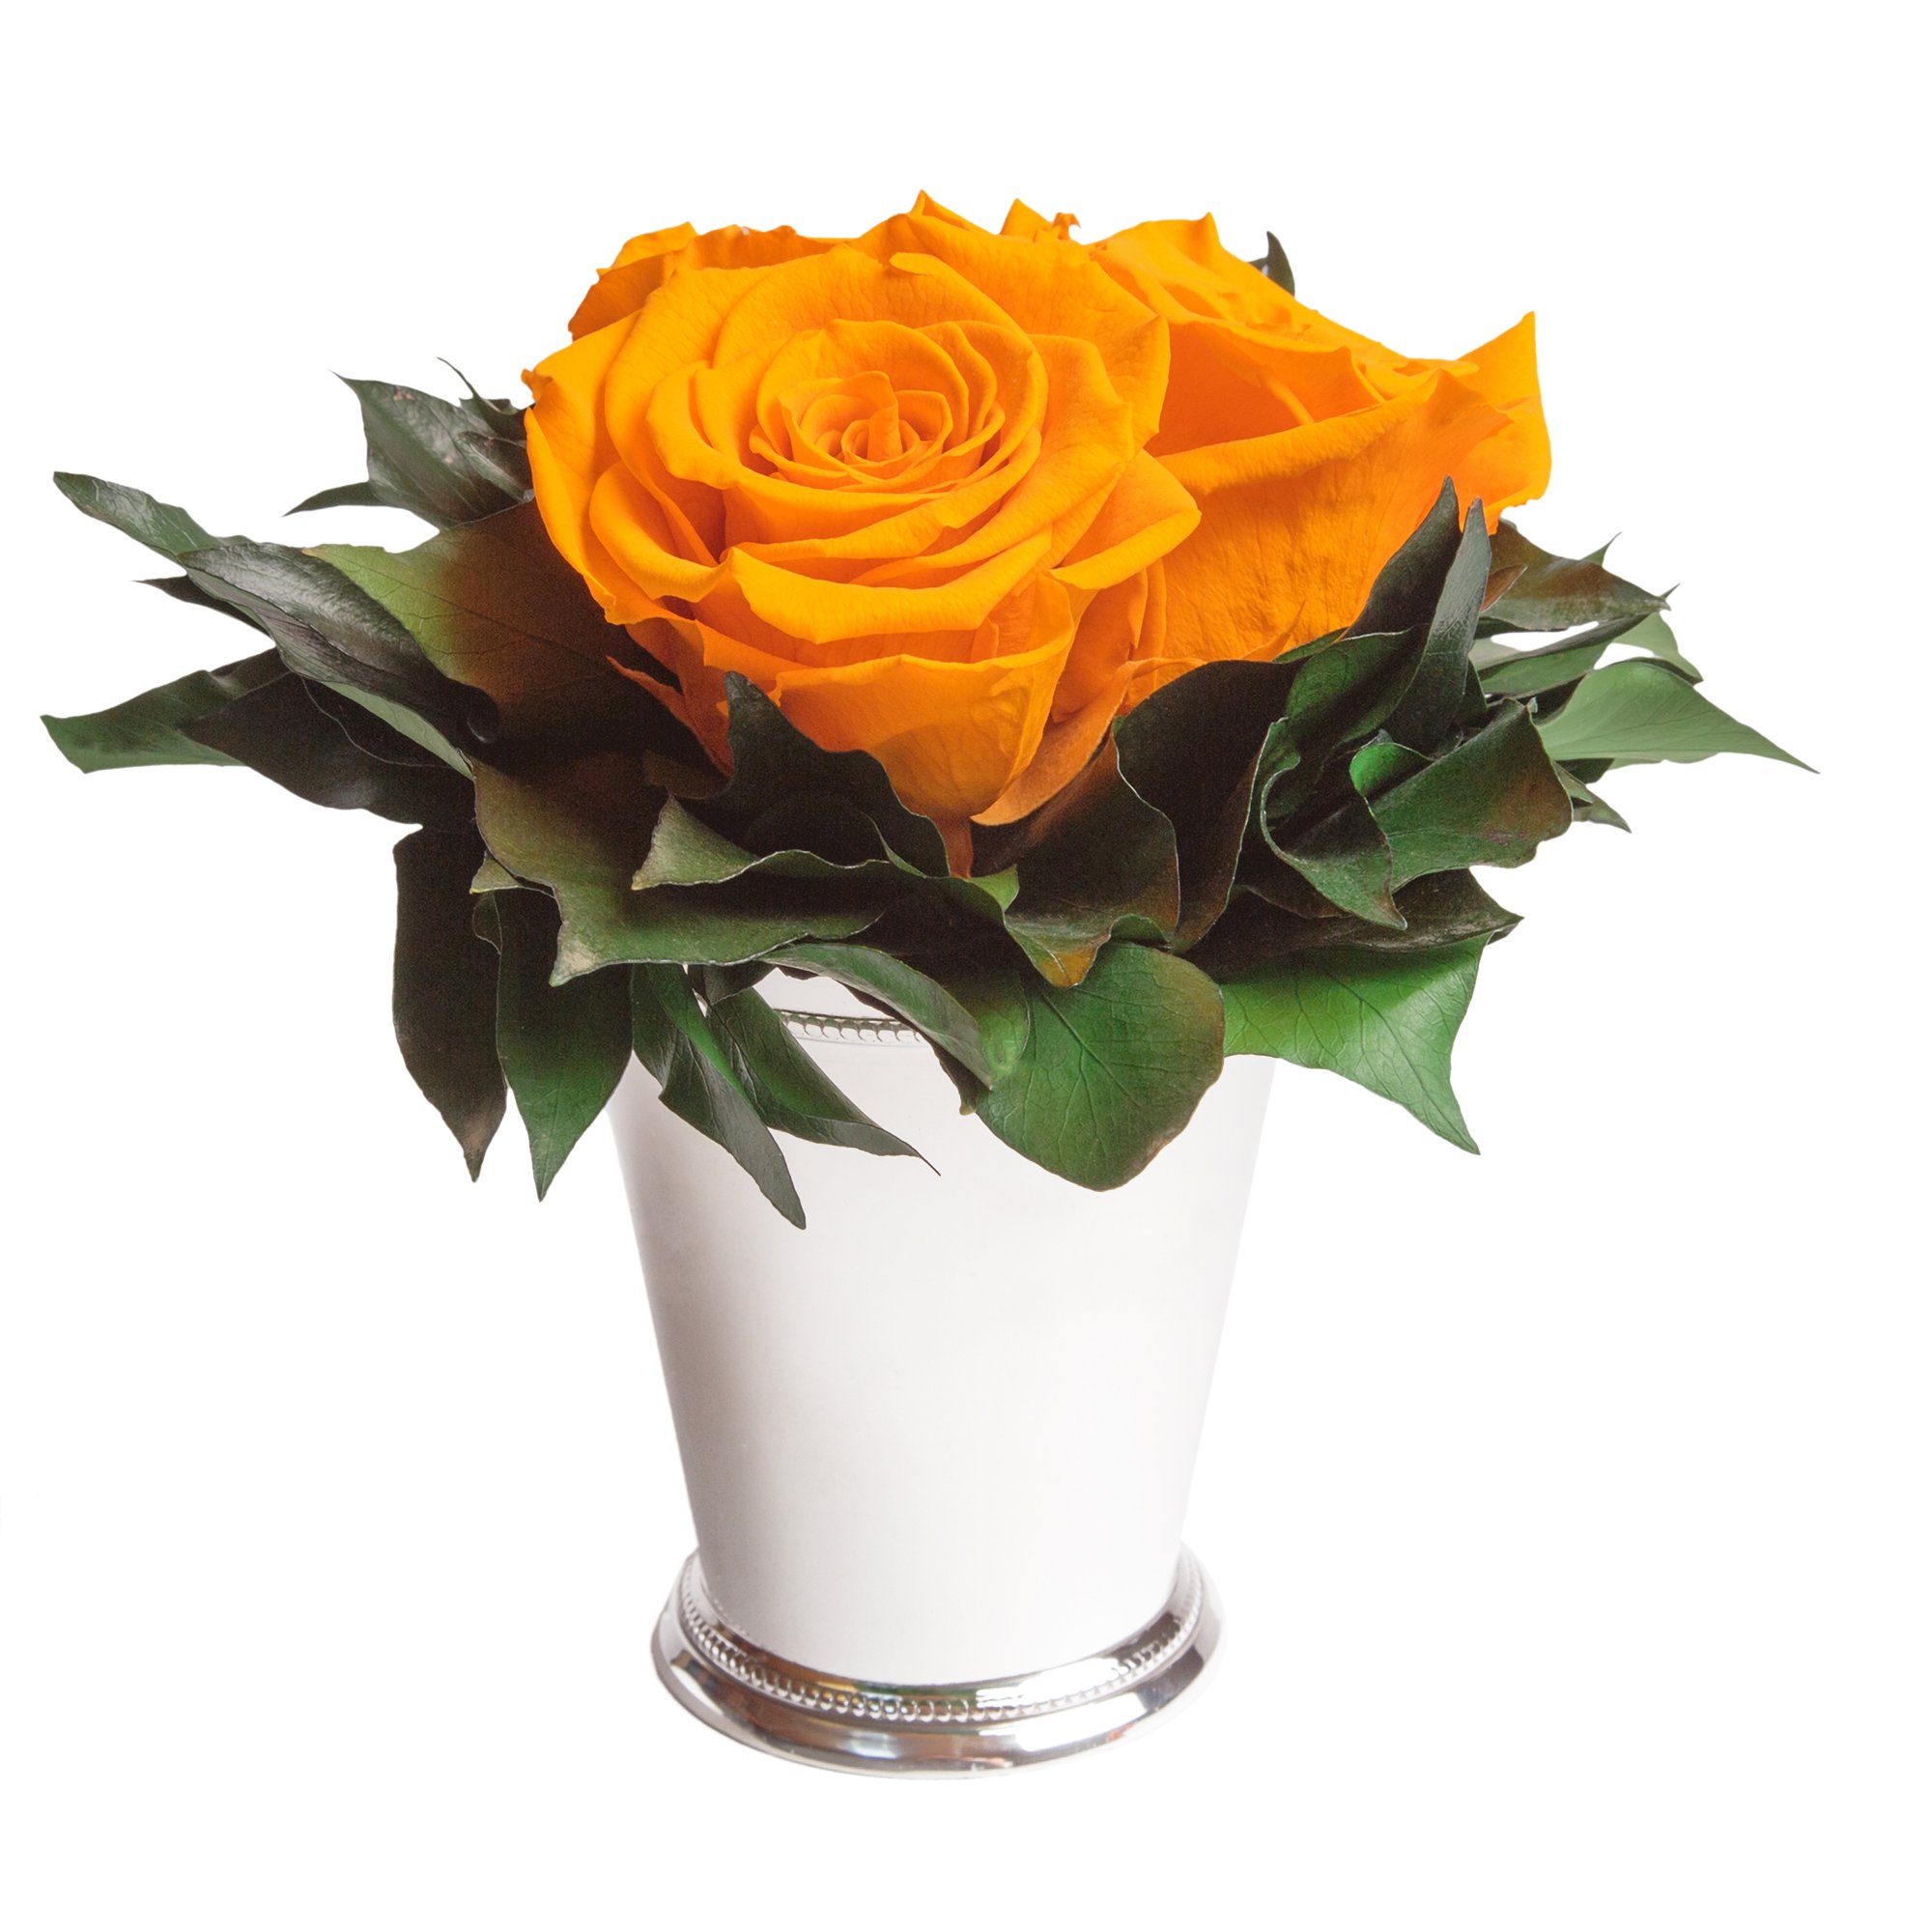 Kunstorchidee 3 Infinity Rosen silberfarbene Vase Wohnzimmer Deko Blumenstrauß Rose, ROSEMARIE SCHULZ Heidelberg, Höhe 15 cm, Rose haltbar bis zu 3 Jahre Gelb